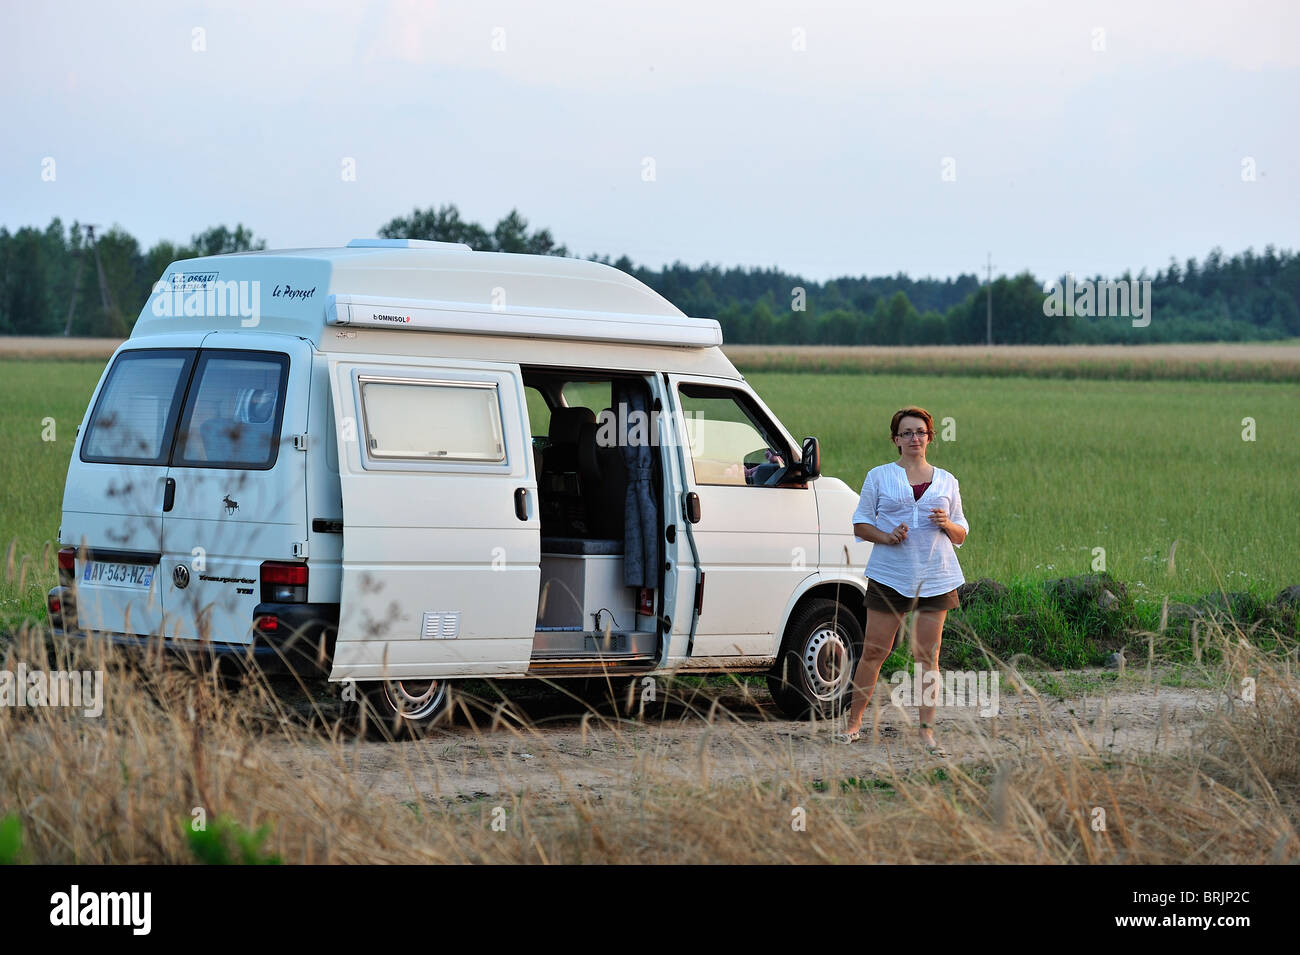 Volkswagen VW T4 Transporter camper in fields Stock Photo - Alamy